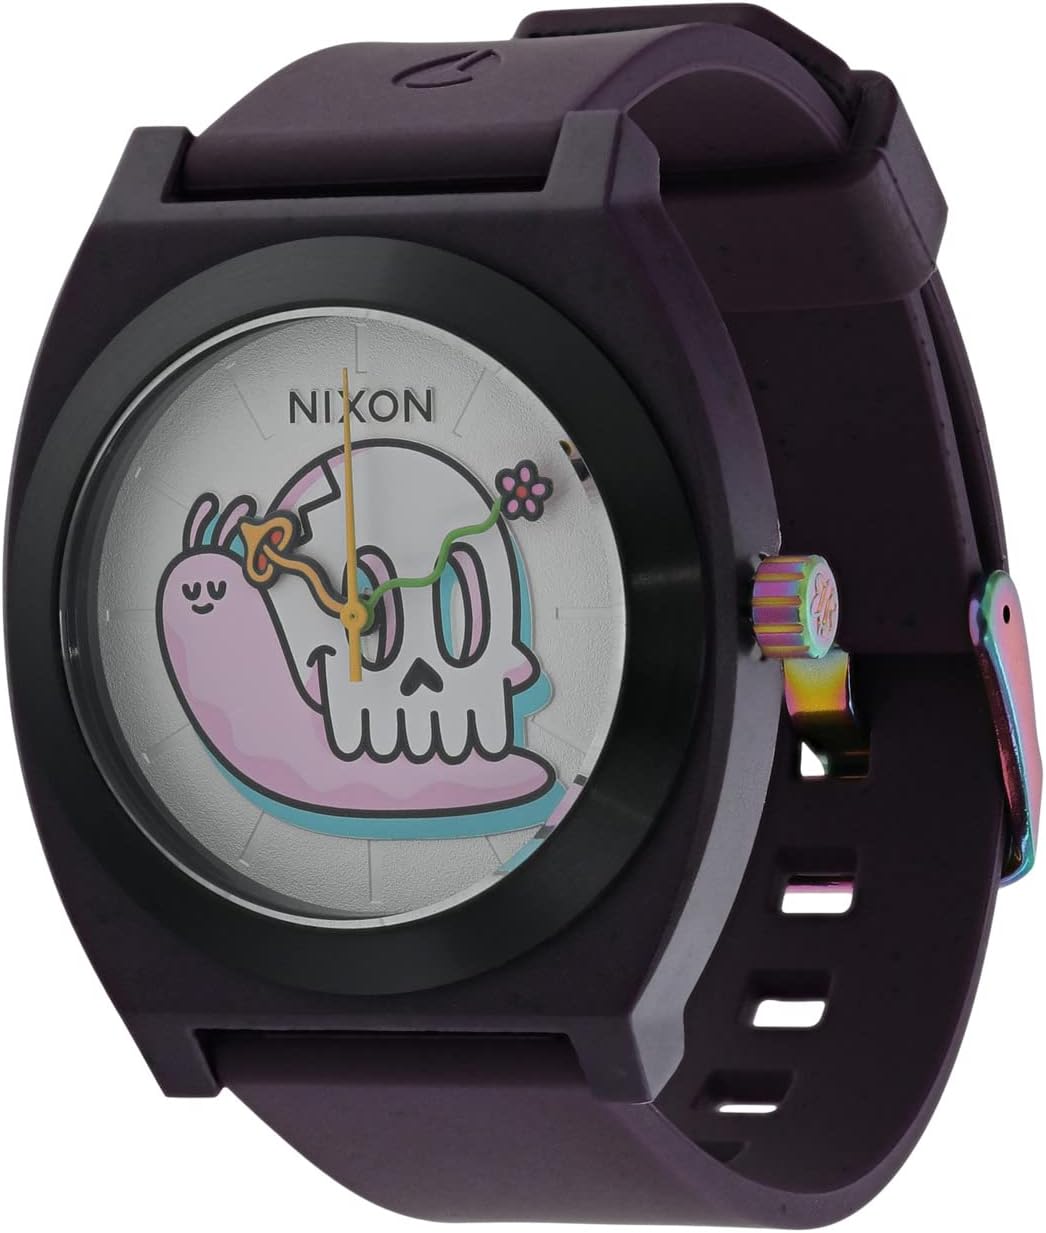 Часы Time Teller OPP Nixon, фиолетовый цена и фото